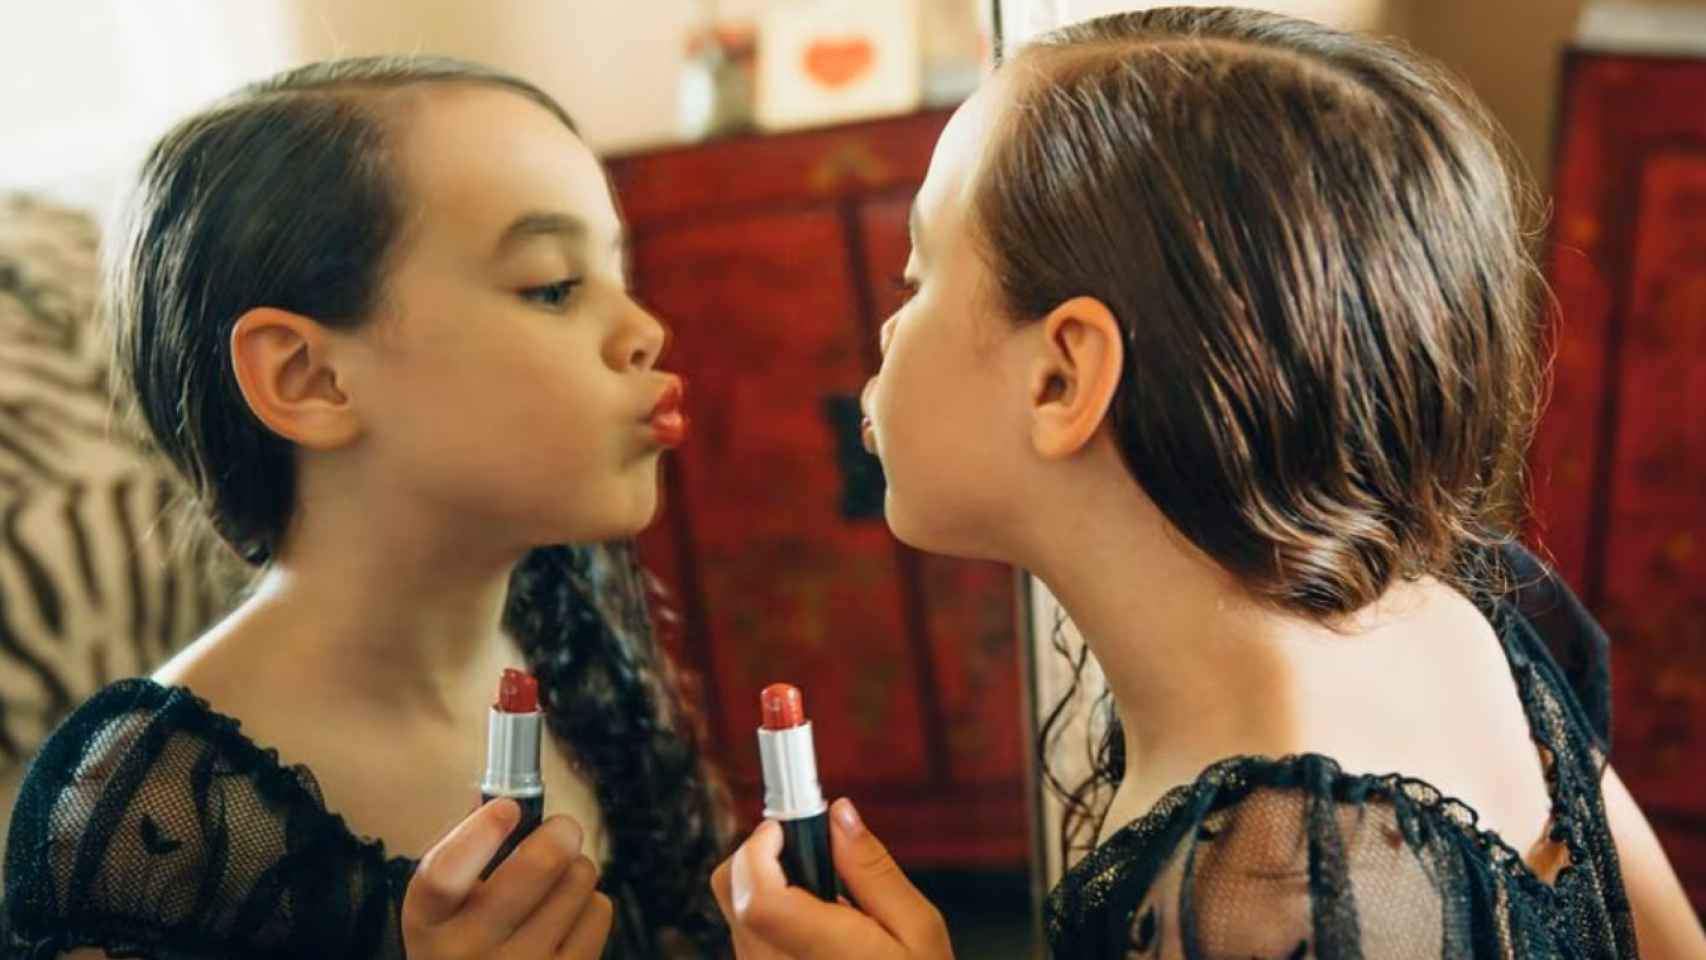 Una niña maquillándose como una mujer adulta.